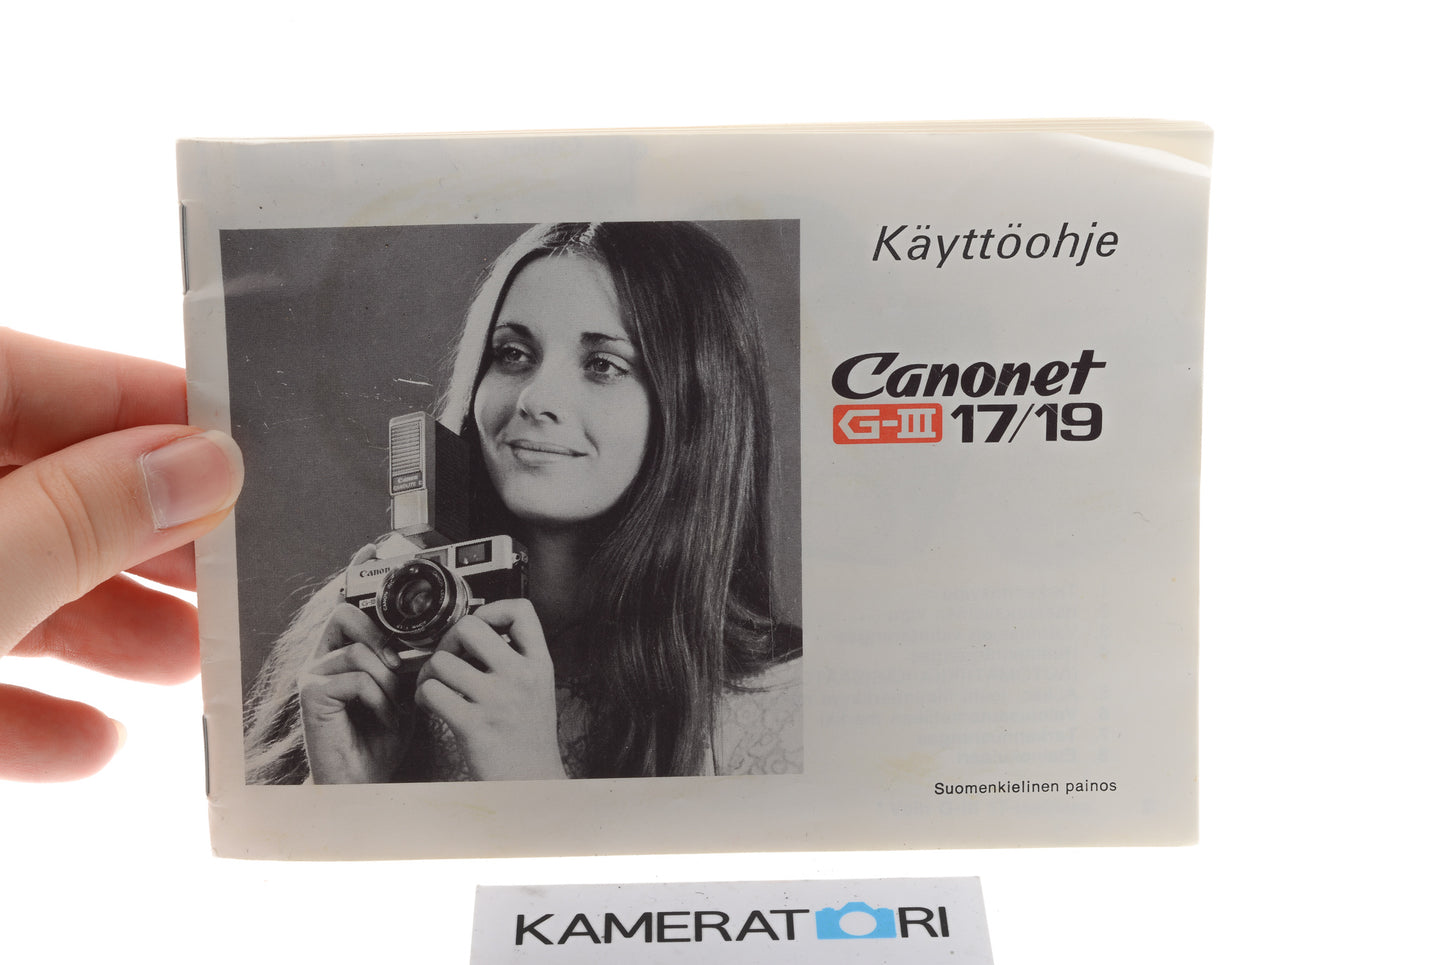 Canon Canonet G-III 17/19 Käyttöohje